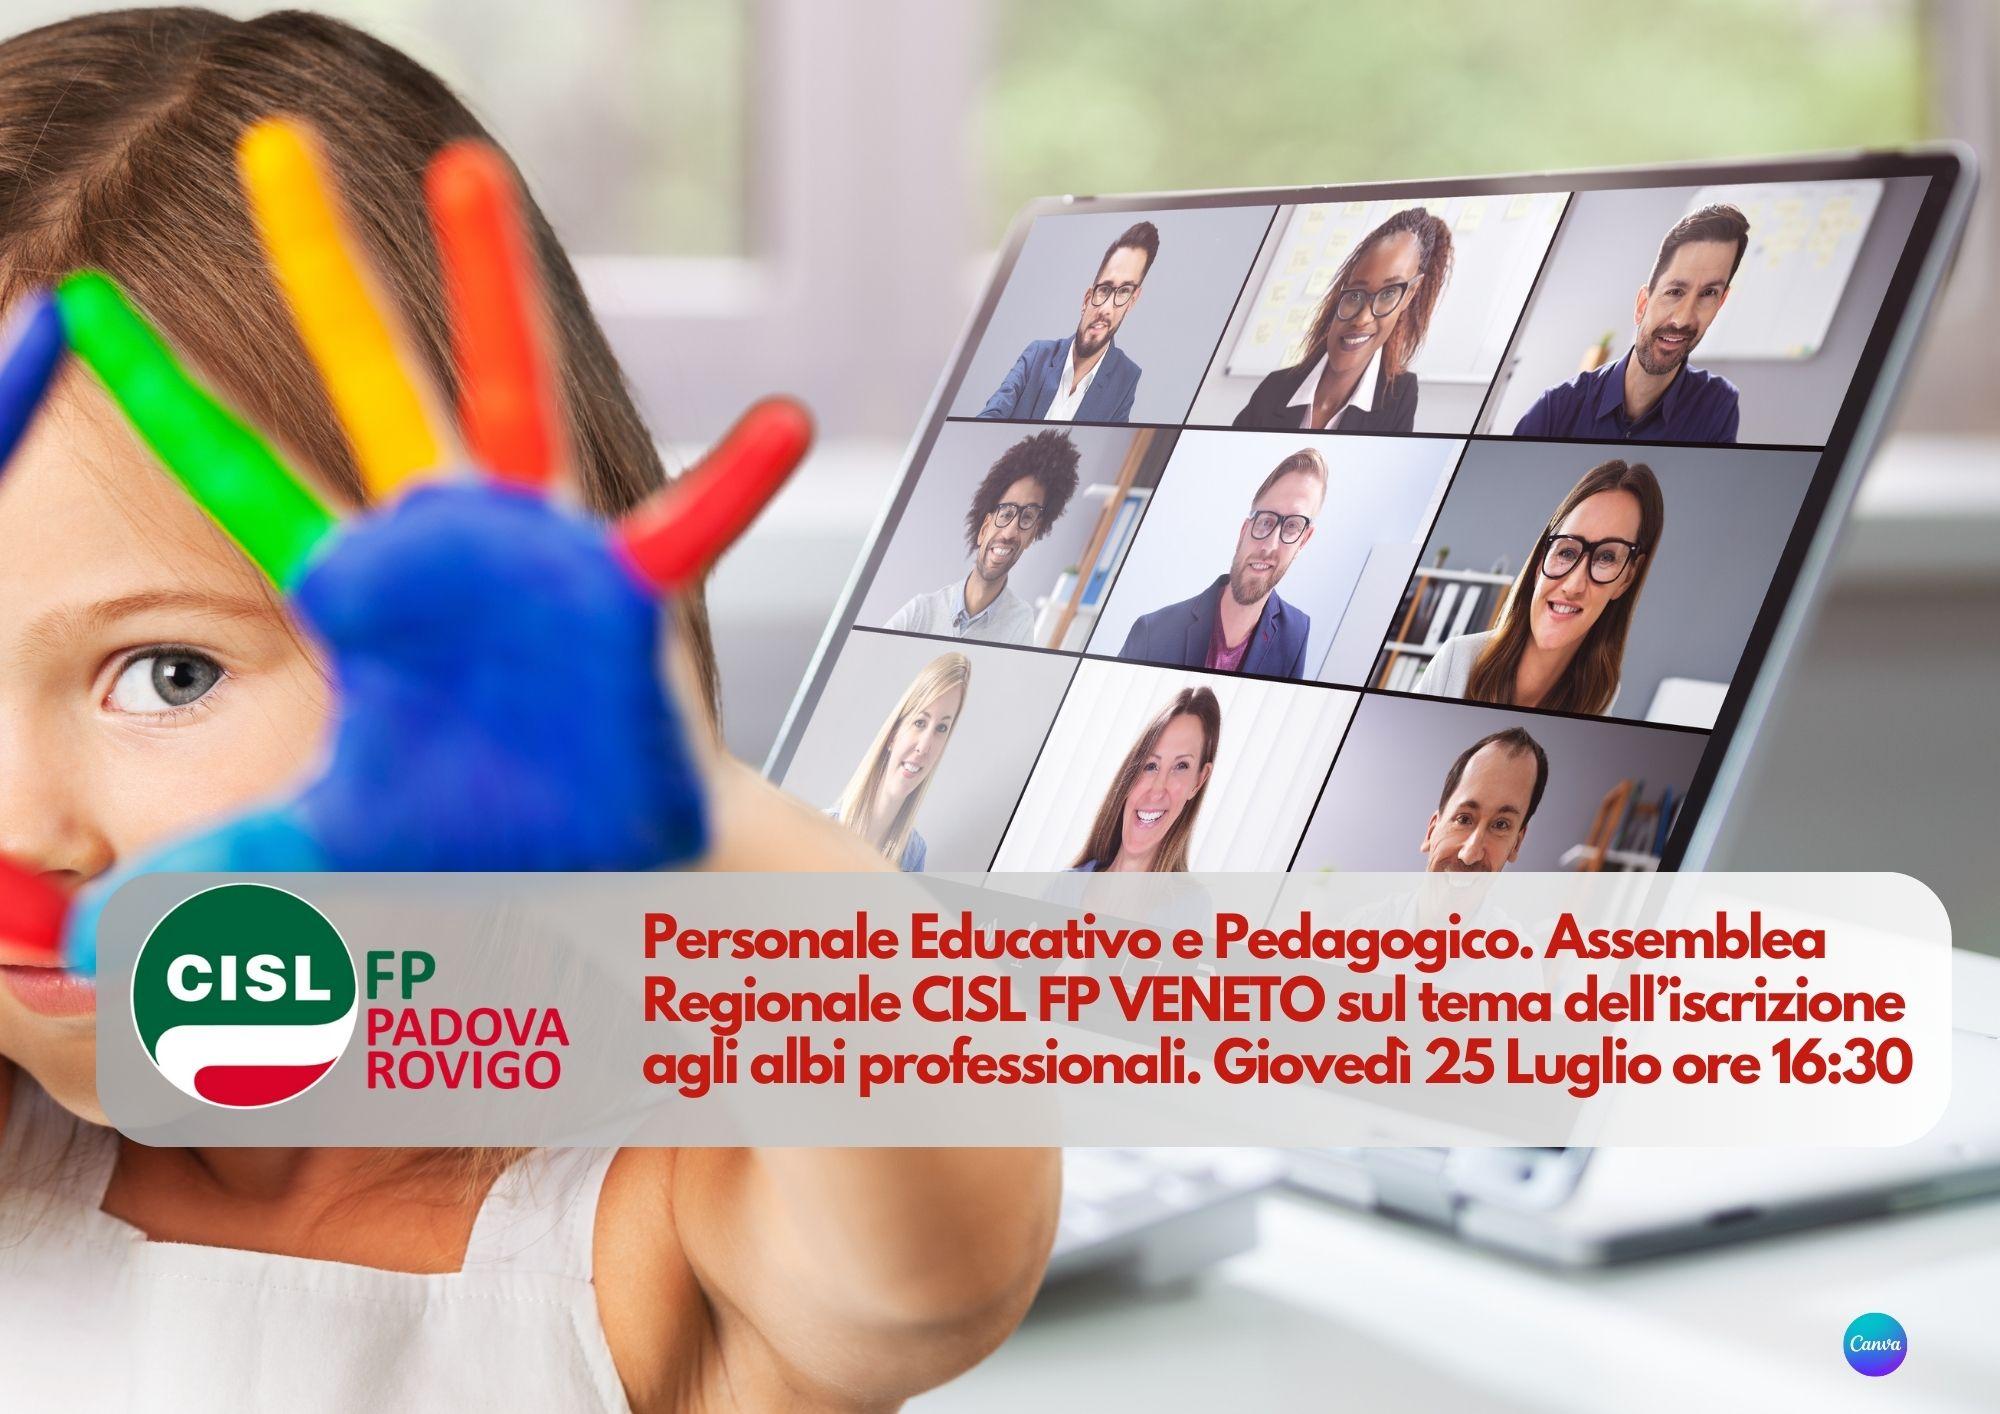 CISL FP Padova Rovigo. Personale educativo e pedagogico: 25 luglio ore 16.30 assemblea regionale sul tema dell'ordinamento